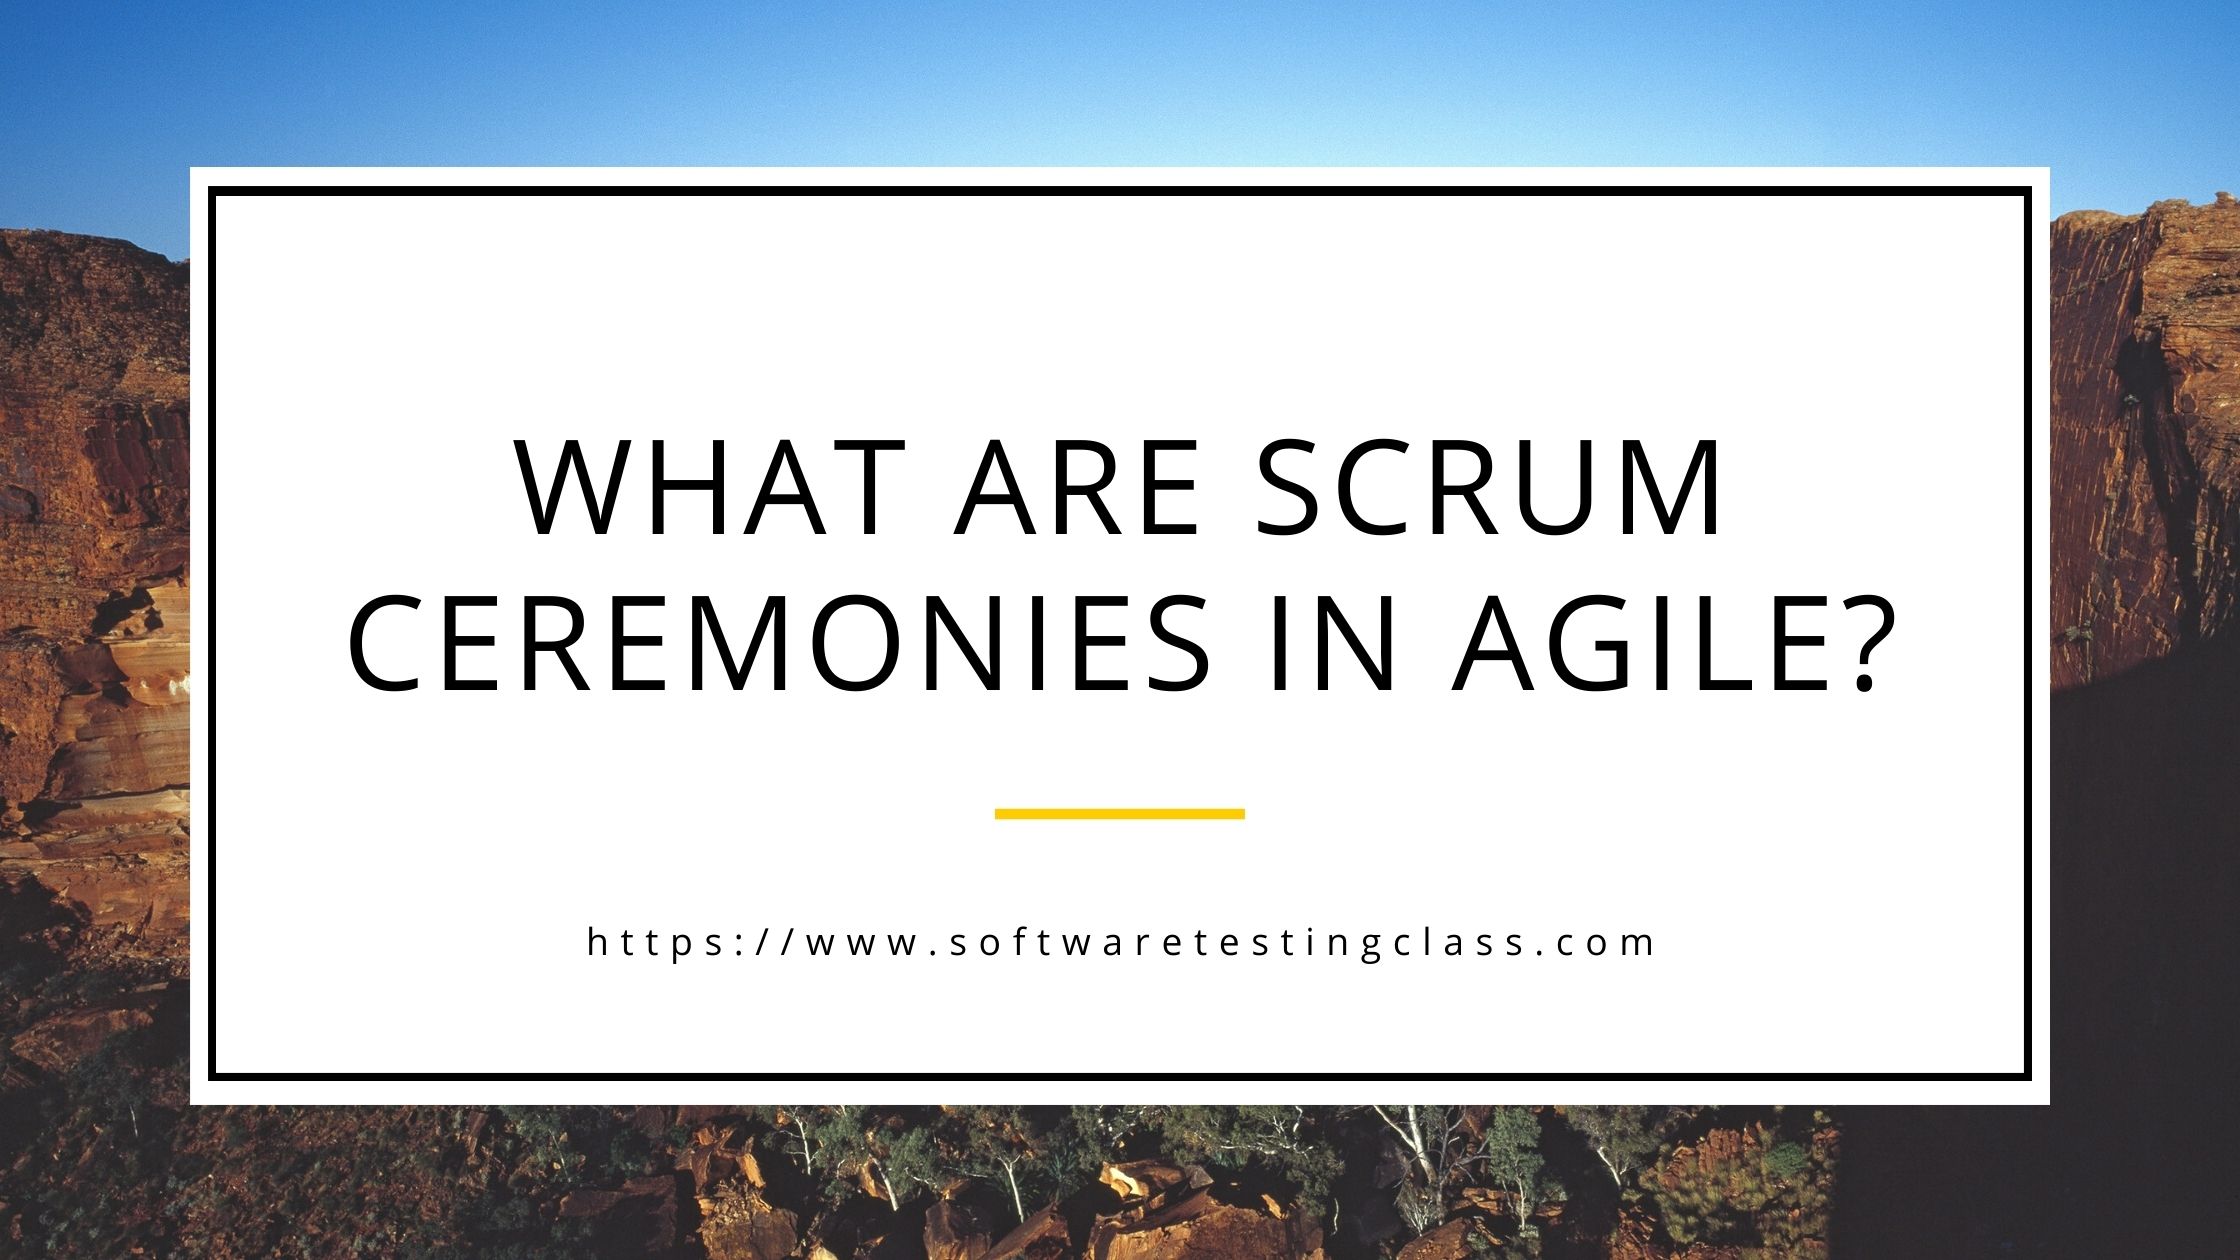 Scrum Ceremonies in Agile